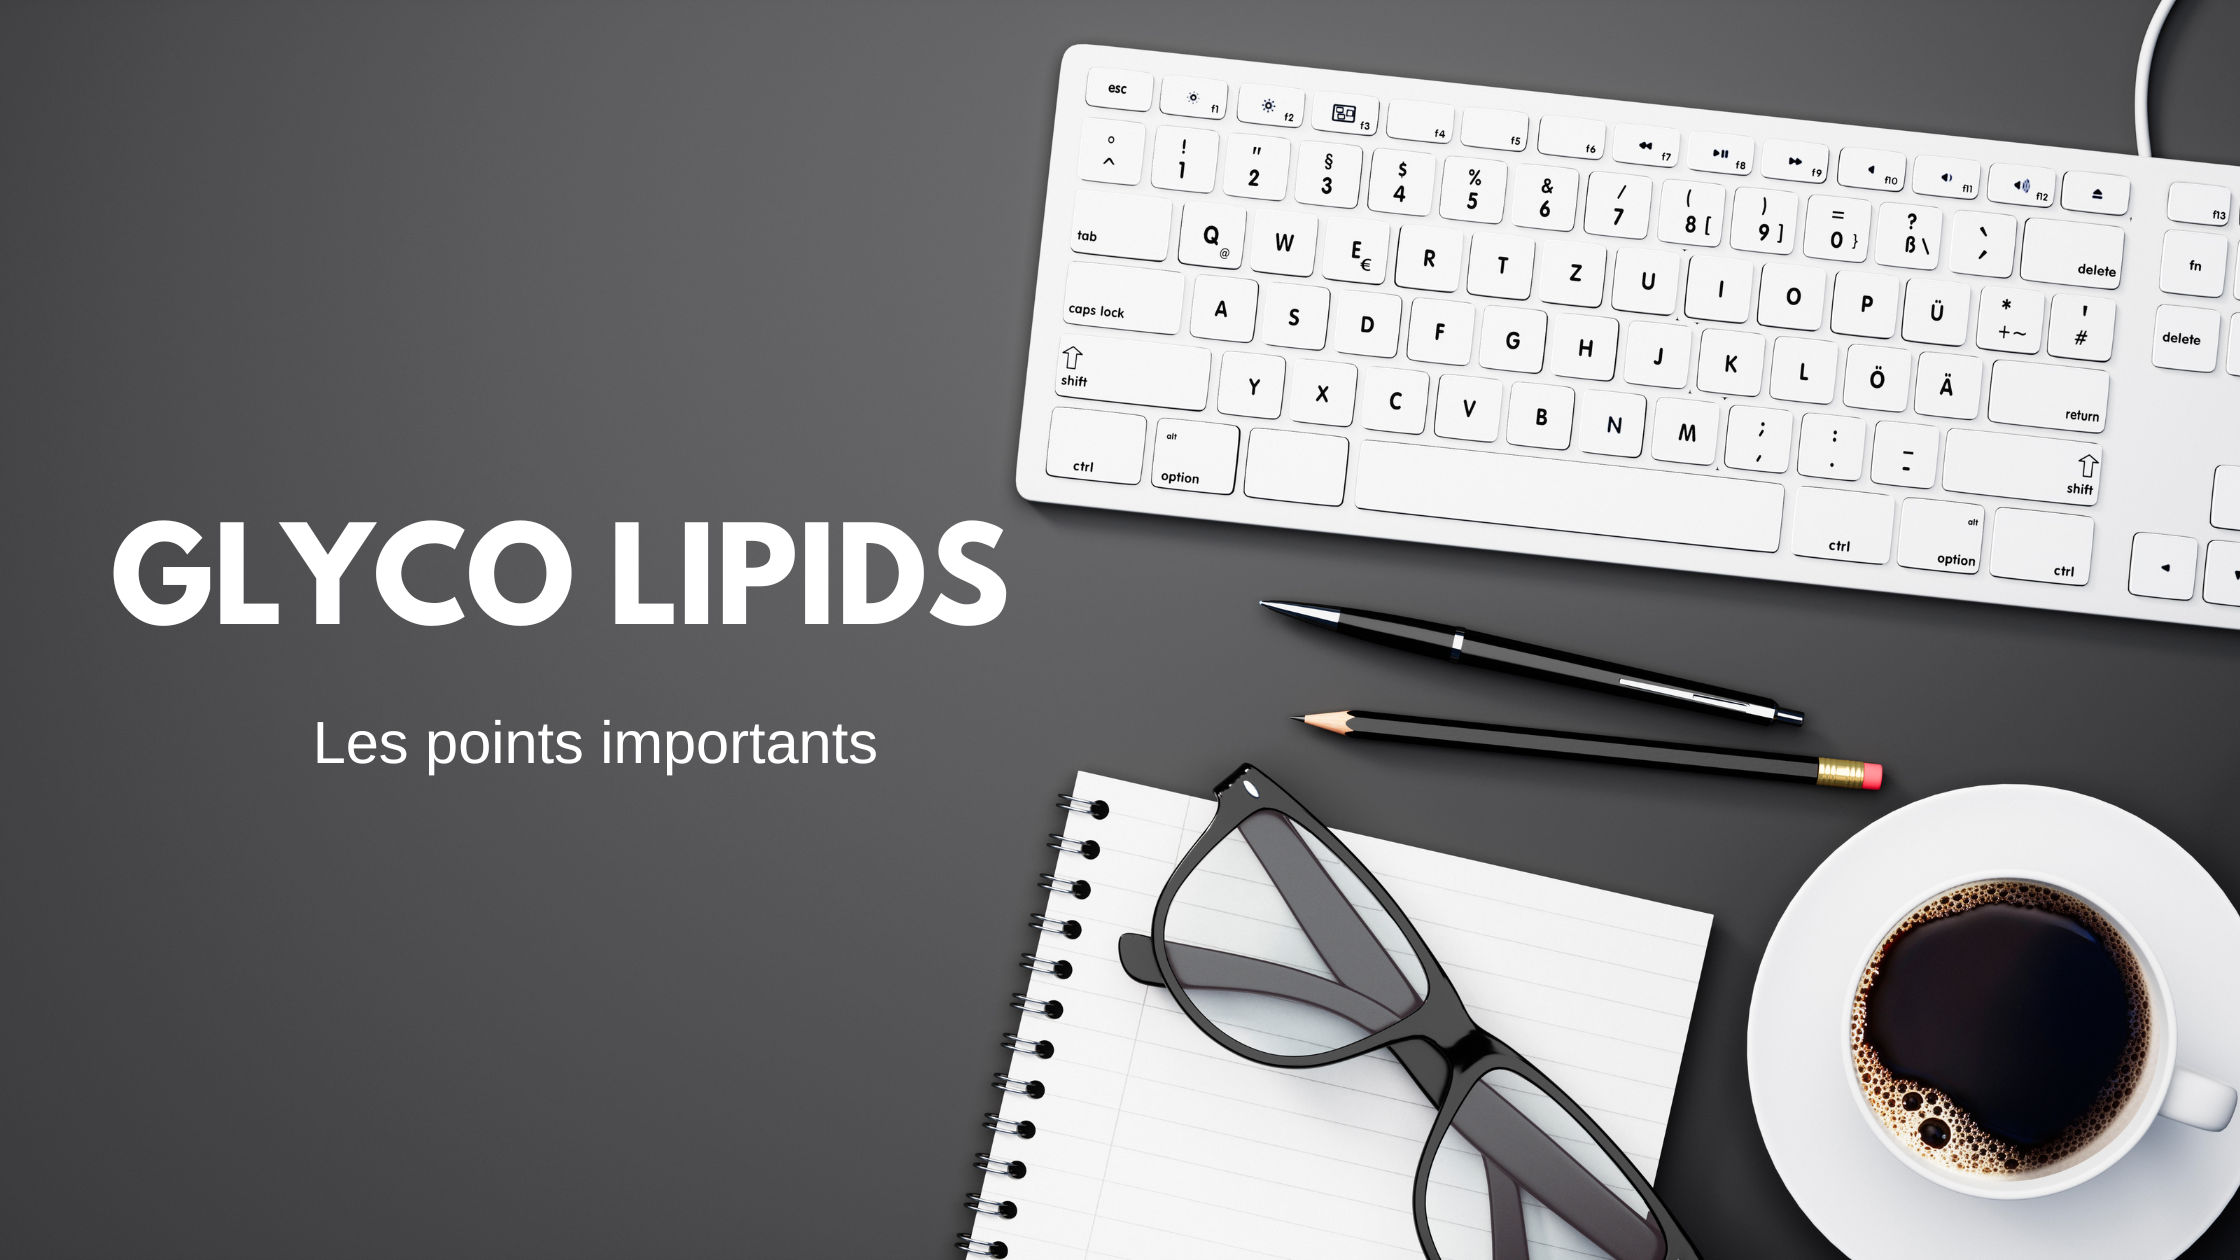 glyco lipids | Les points importants